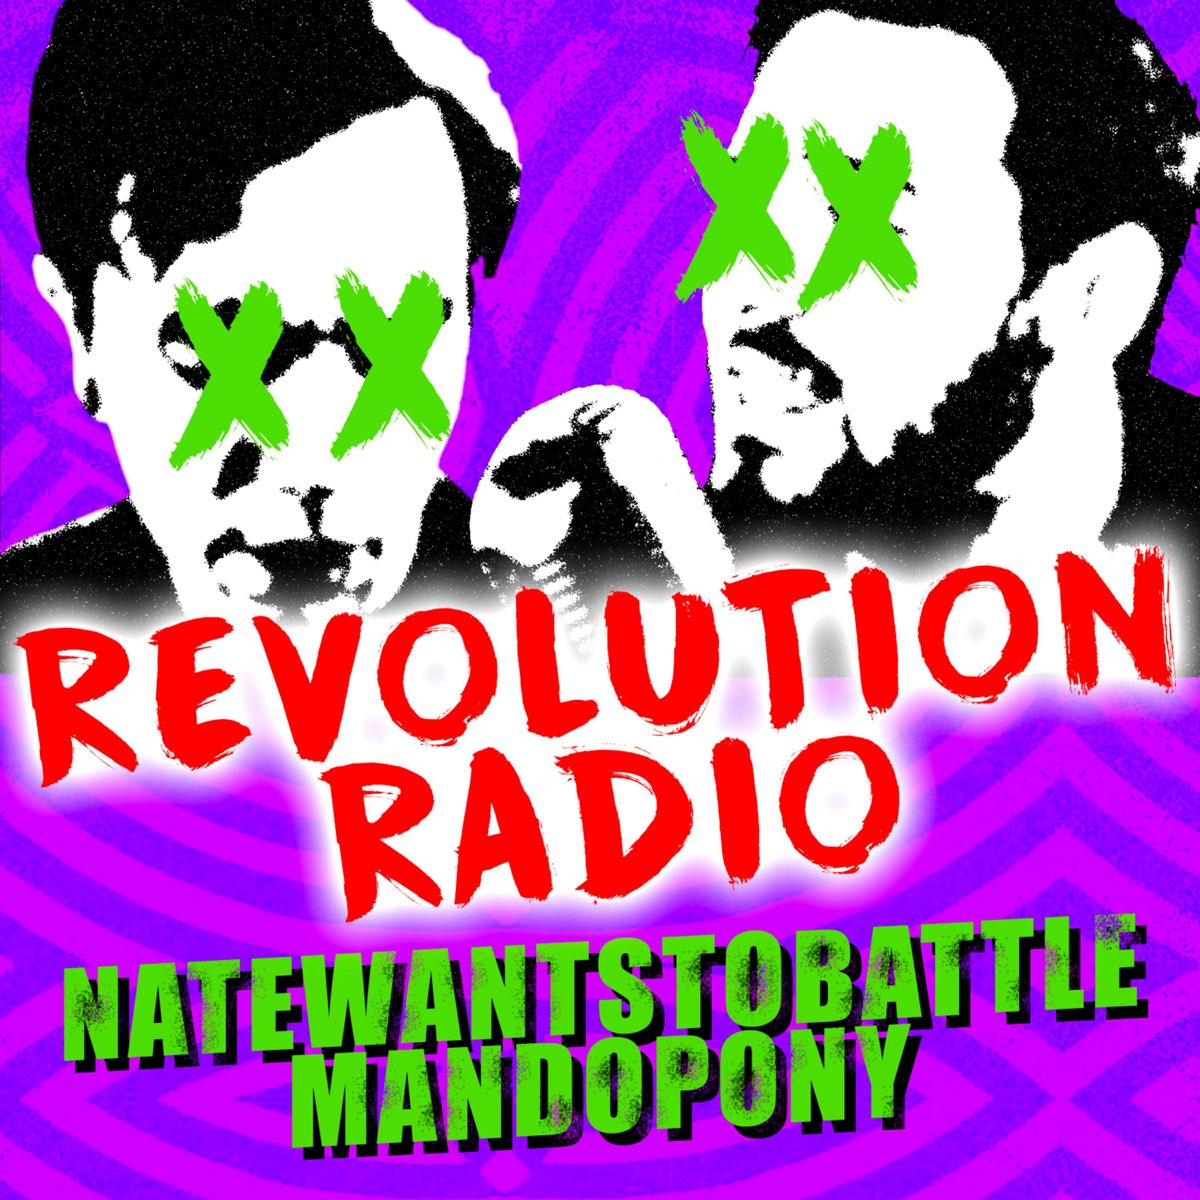 Революция песня слушать. Радио революция. Revolution Radio альбом. Green Day "Revolution Radio". Фото альбома группы Green Day - Revolution Radio.